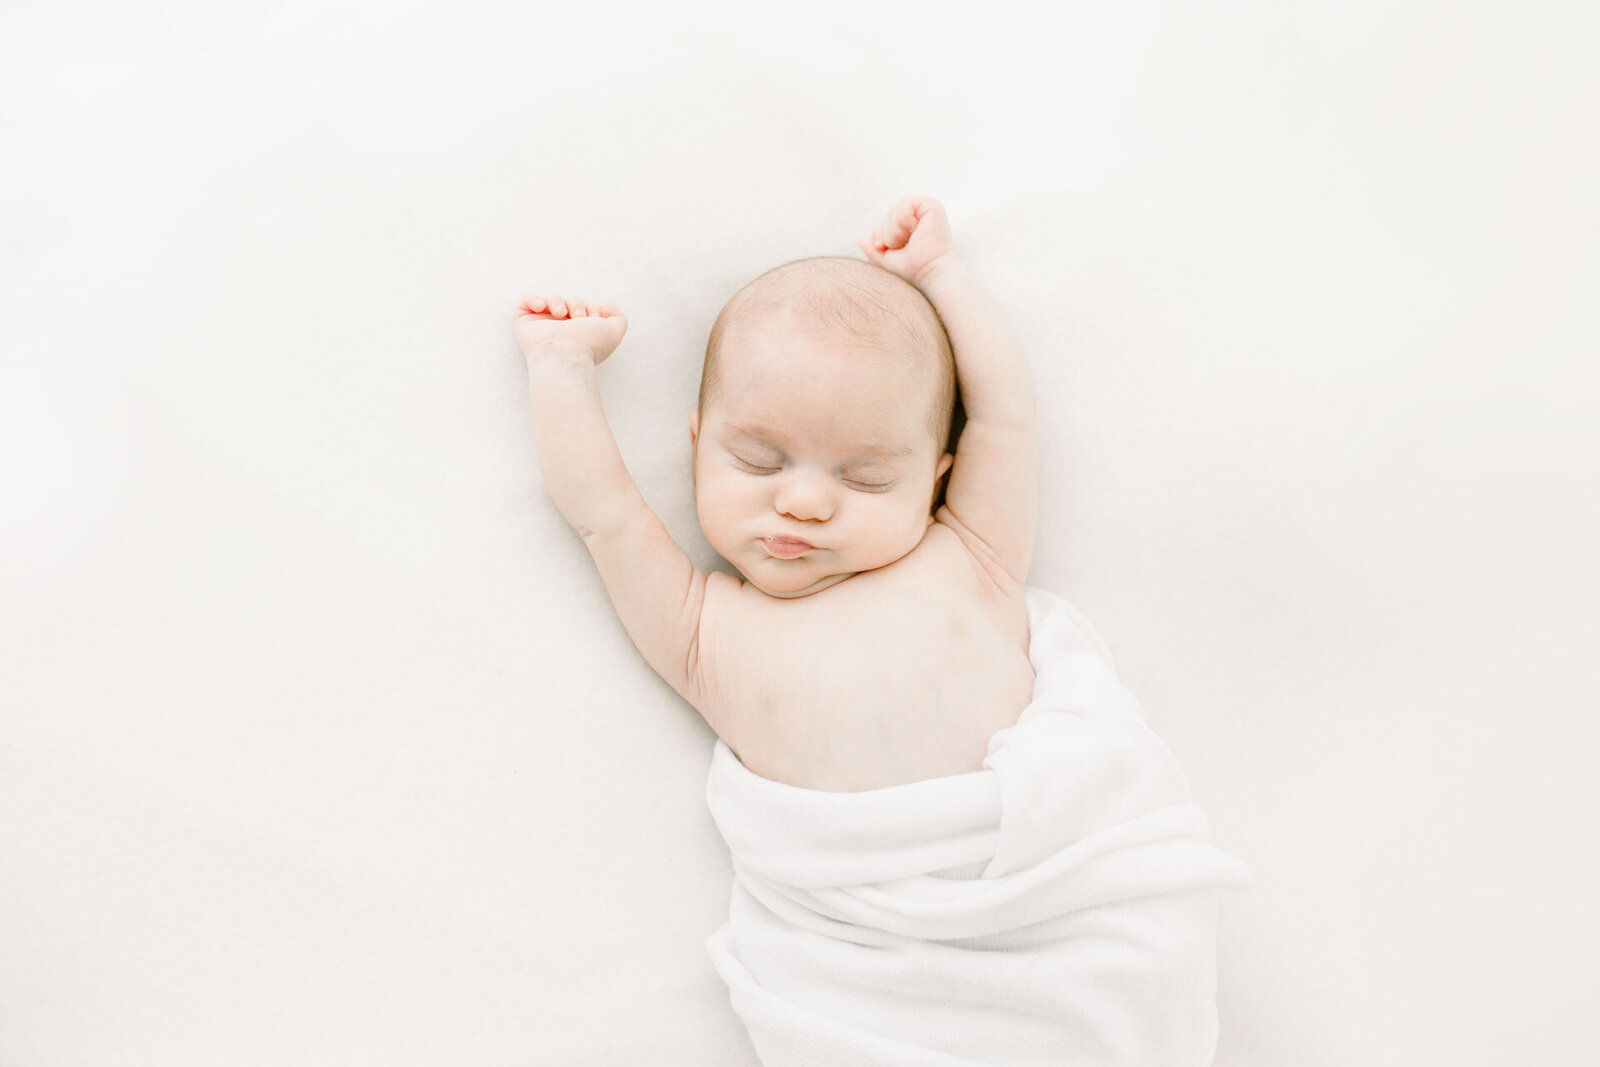 Neugeborenenshooting: Schlafendes Baby mit ausgetreckten Armen in weiße Decke gewickelt.